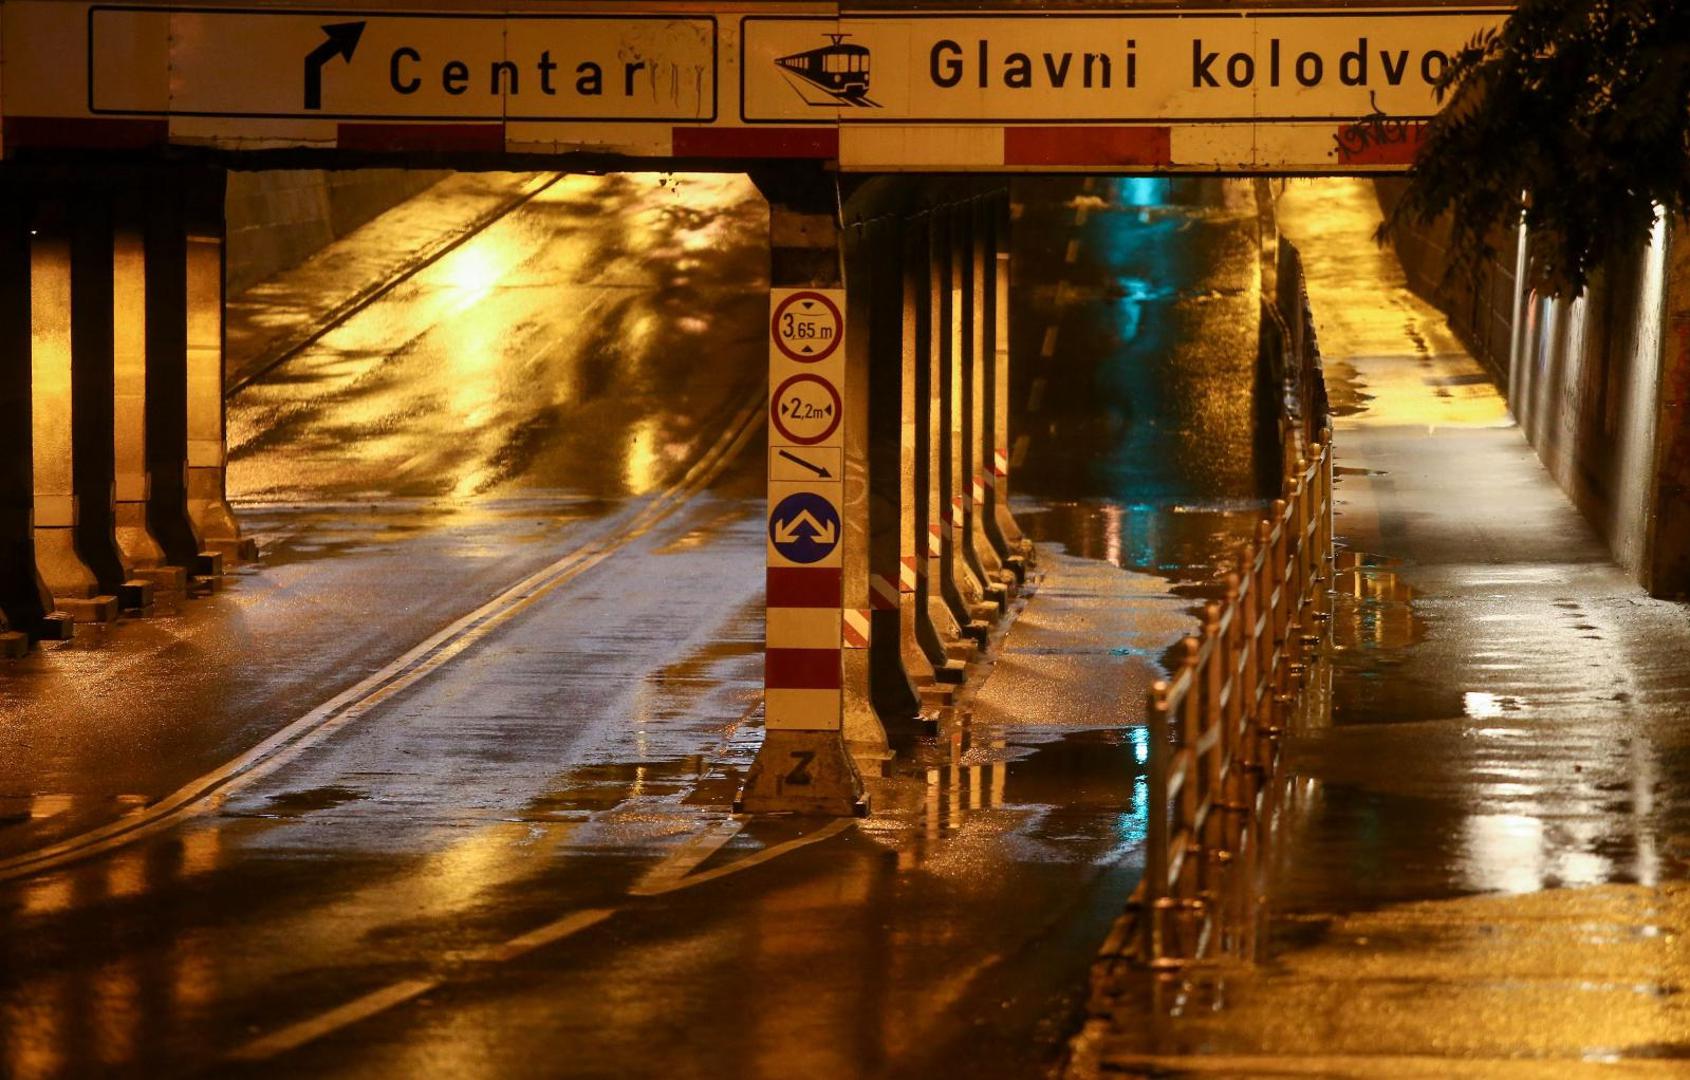 03.08.2020., Zagreb - Miramarska ulica nakon velike kise prometuje bez problema.
Photo: Matija Habljak/PIXSELL